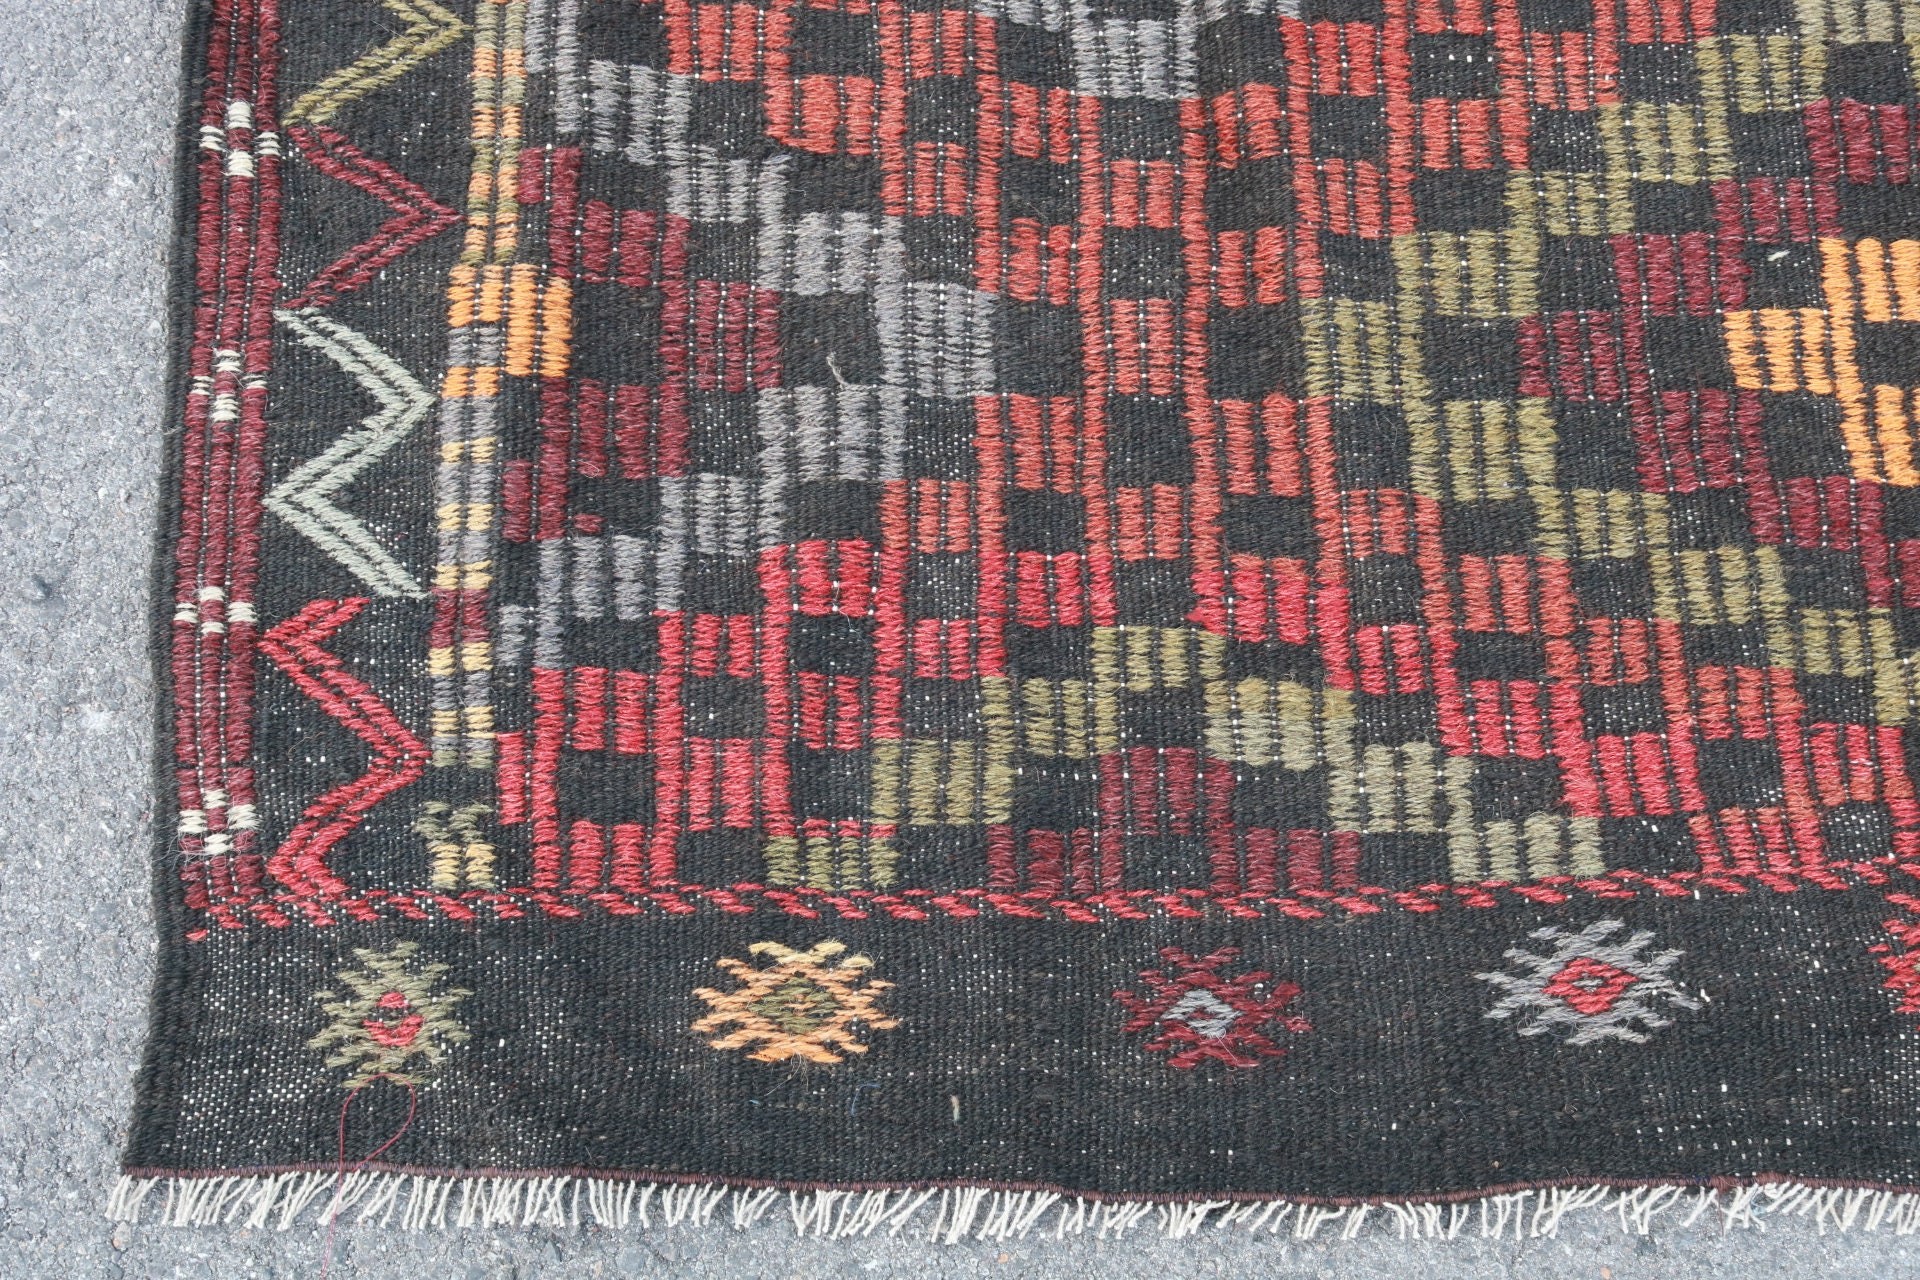 Vintage Rugs, Dining Room Rug, Turkish Rug, Kilim, 6.2x8 ft Large Rug, Rugs for Living Room, Cool Rug, Moroccan Rugs, Bedroom Rug, Art Rugs